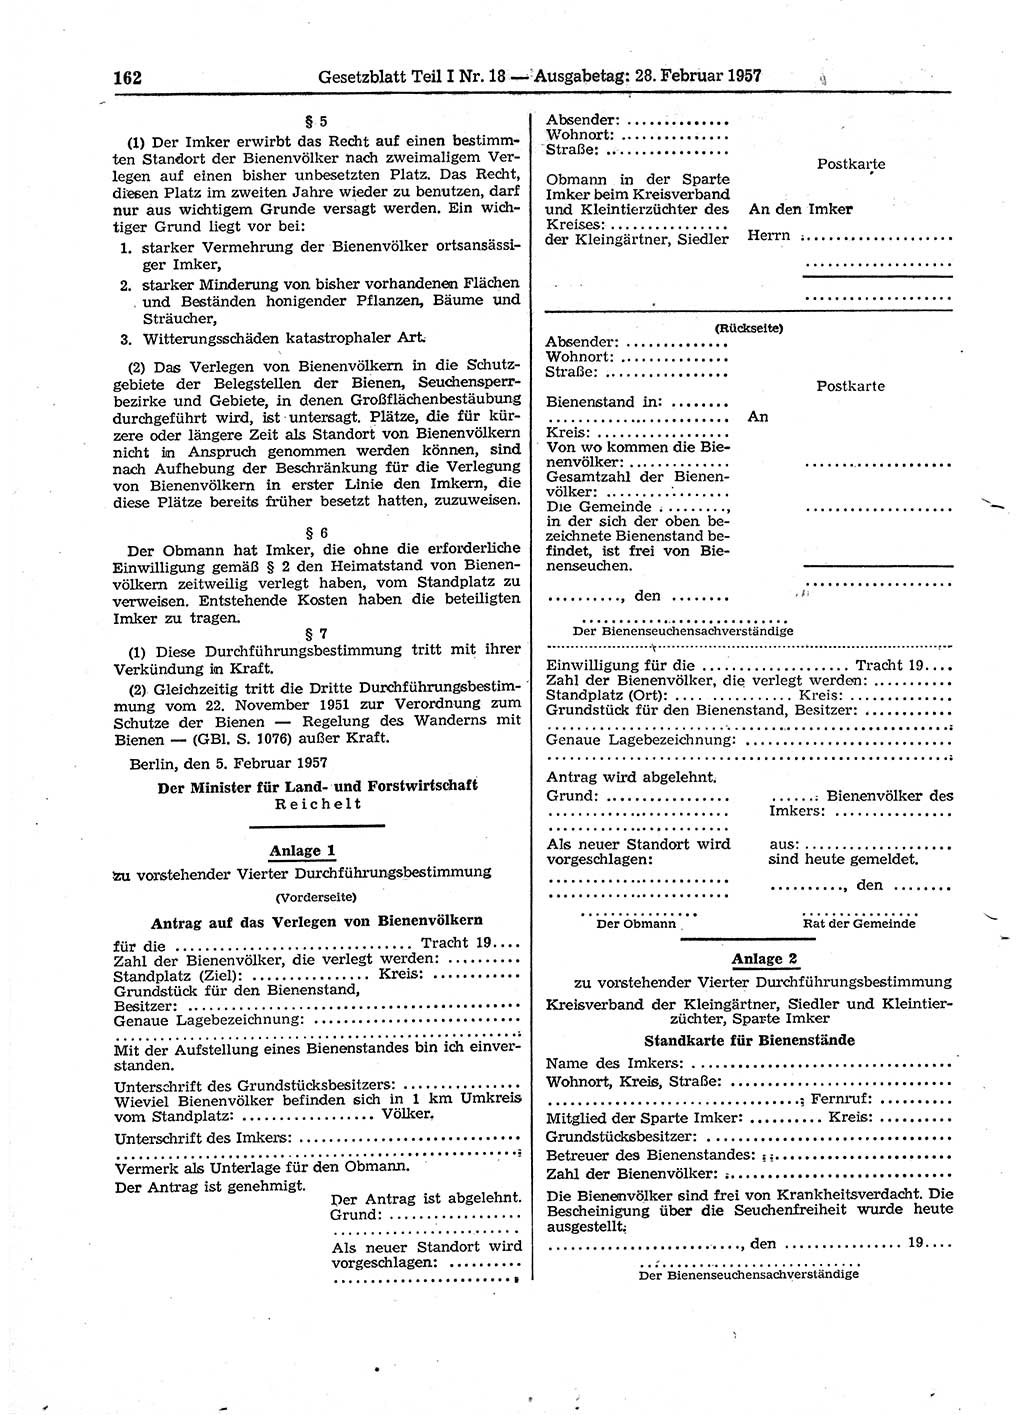 Gesetzblatt (GBl.) der Deutschen Demokratischen Republik (DDR) Teil Ⅰ 1957, Seite 162 (GBl. DDR Ⅰ 1957, S. 162)